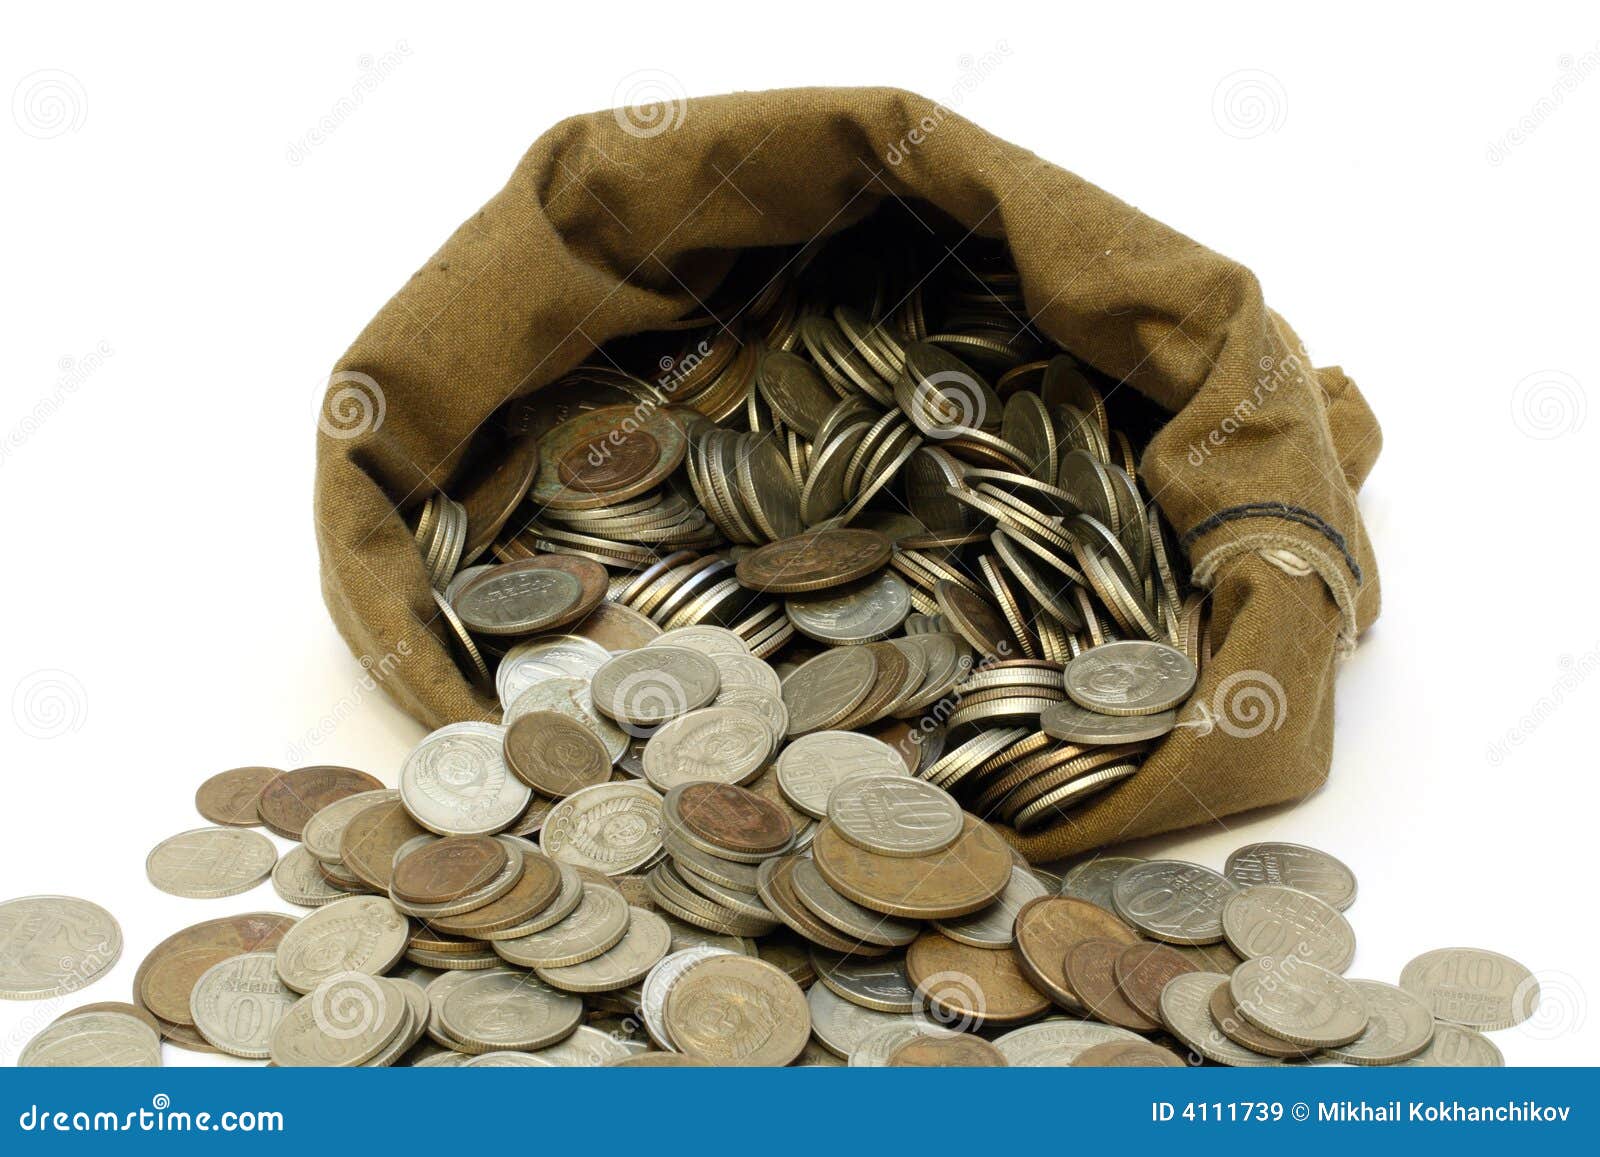 Сколько монет в мешке